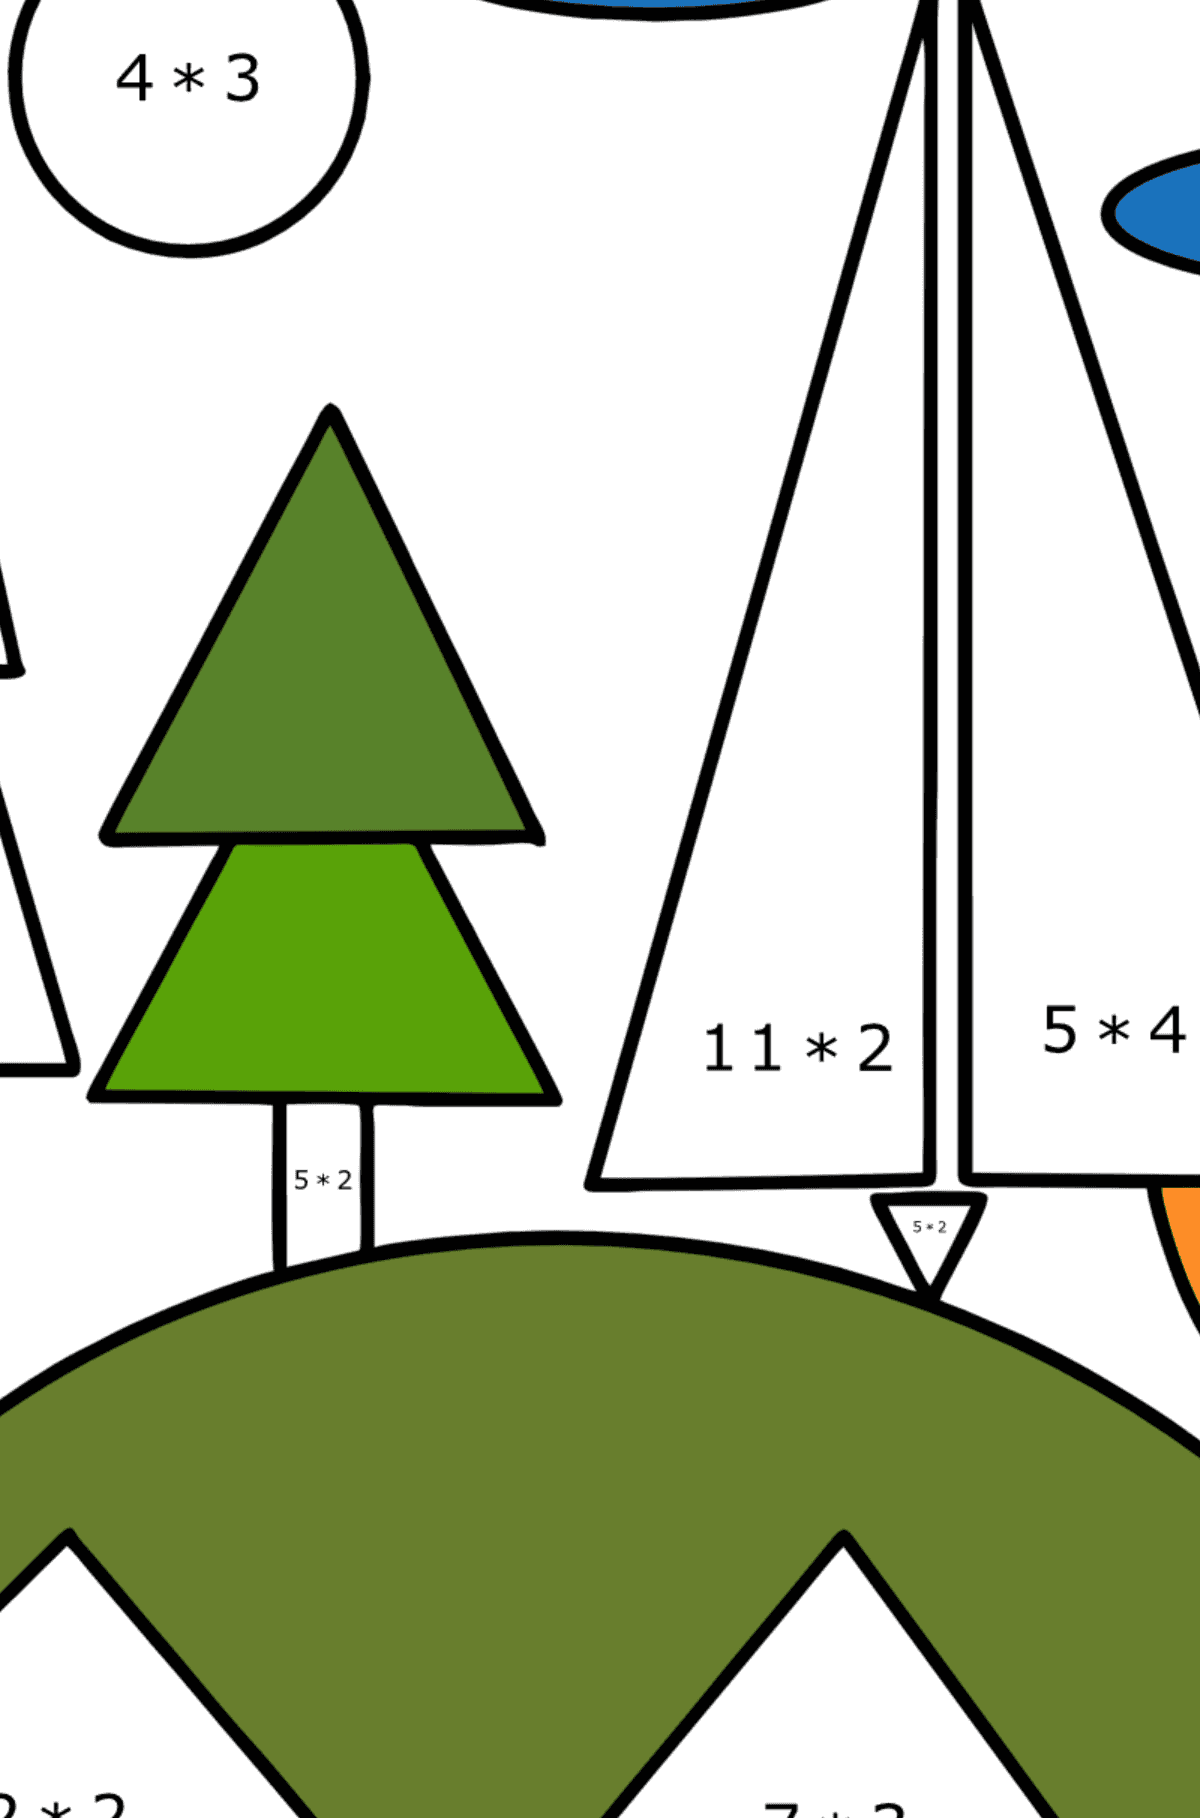 Ausmalbild Wald auf einem Hügel mit geometrischen Formen - Mathe Ausmalbilder - Multiplikation für Kinder